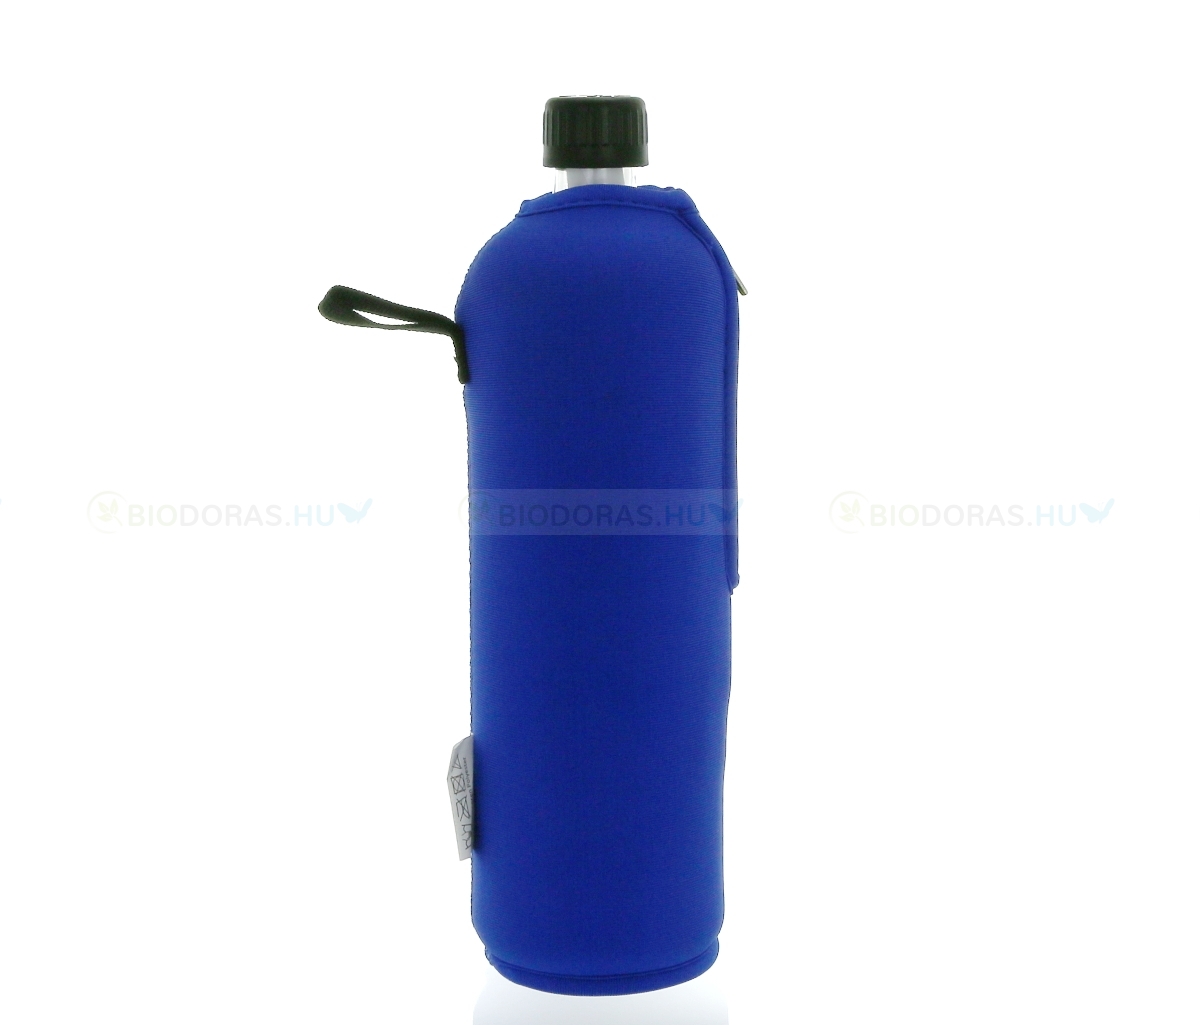 DORAS Üvegkulacs (üvegpalack) sötétkék színű neoprén huzattal - 700 ml